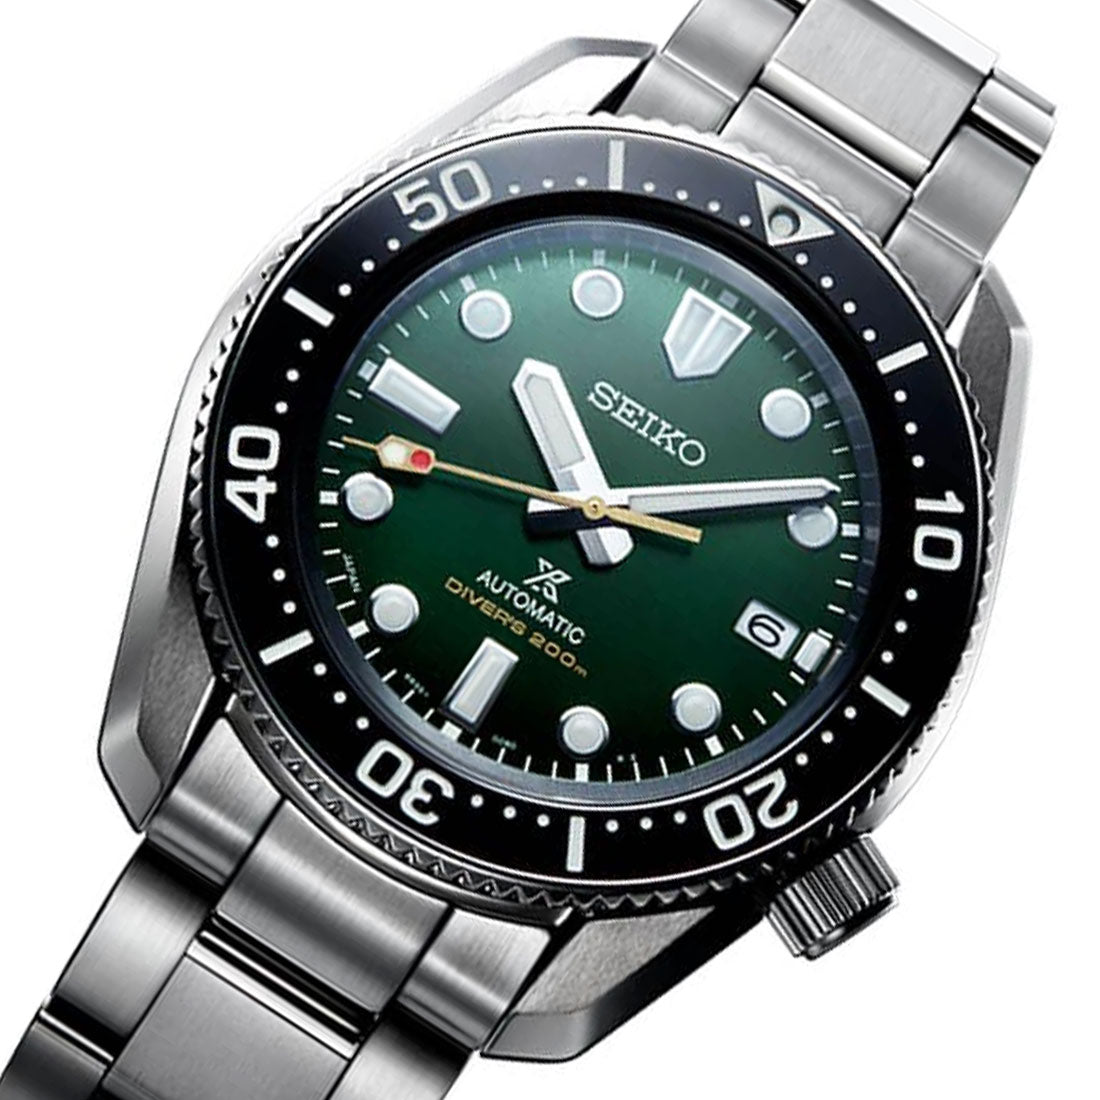 Seiko Prospex Marinemaster JDM Divers Watch SBDC133 -Seiko